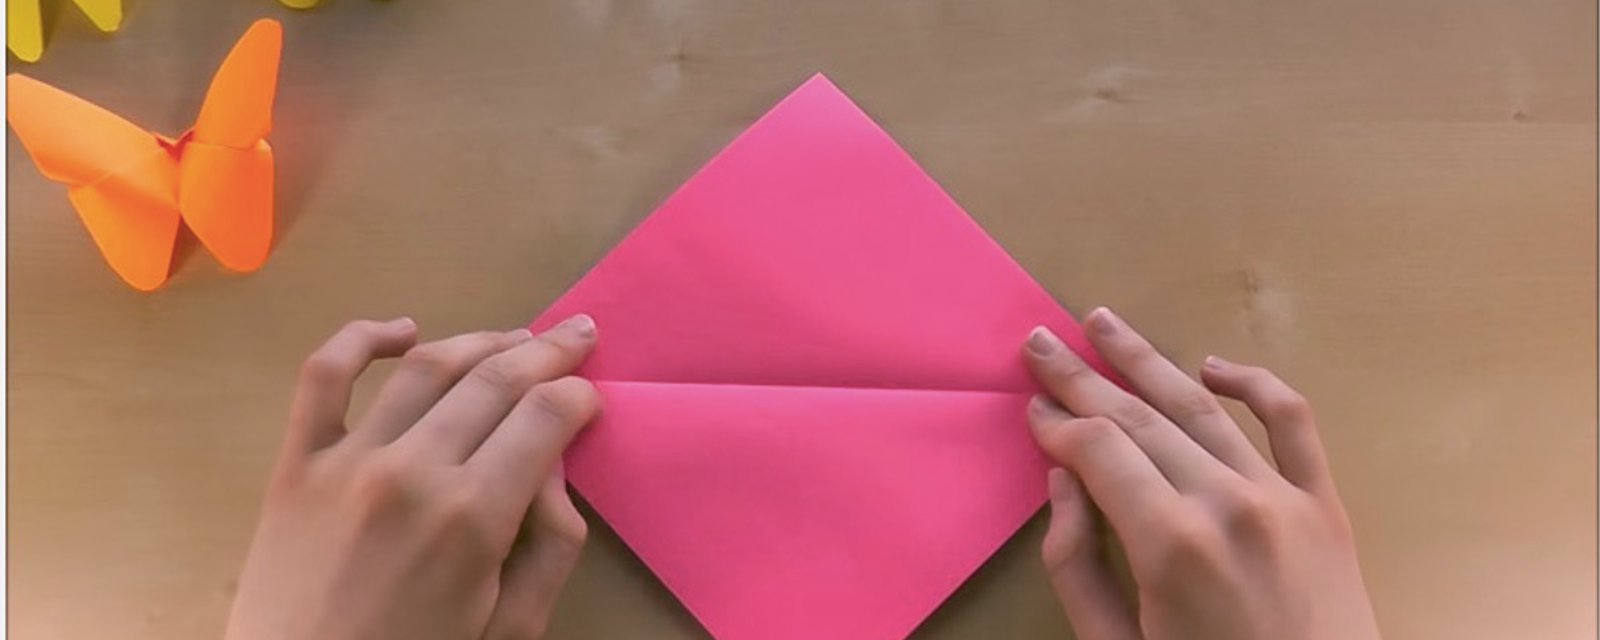 Elle coupe un carré dans un papier très coloré et en quelques plis seulement, elle réalise le plus magnifique des papillons! 